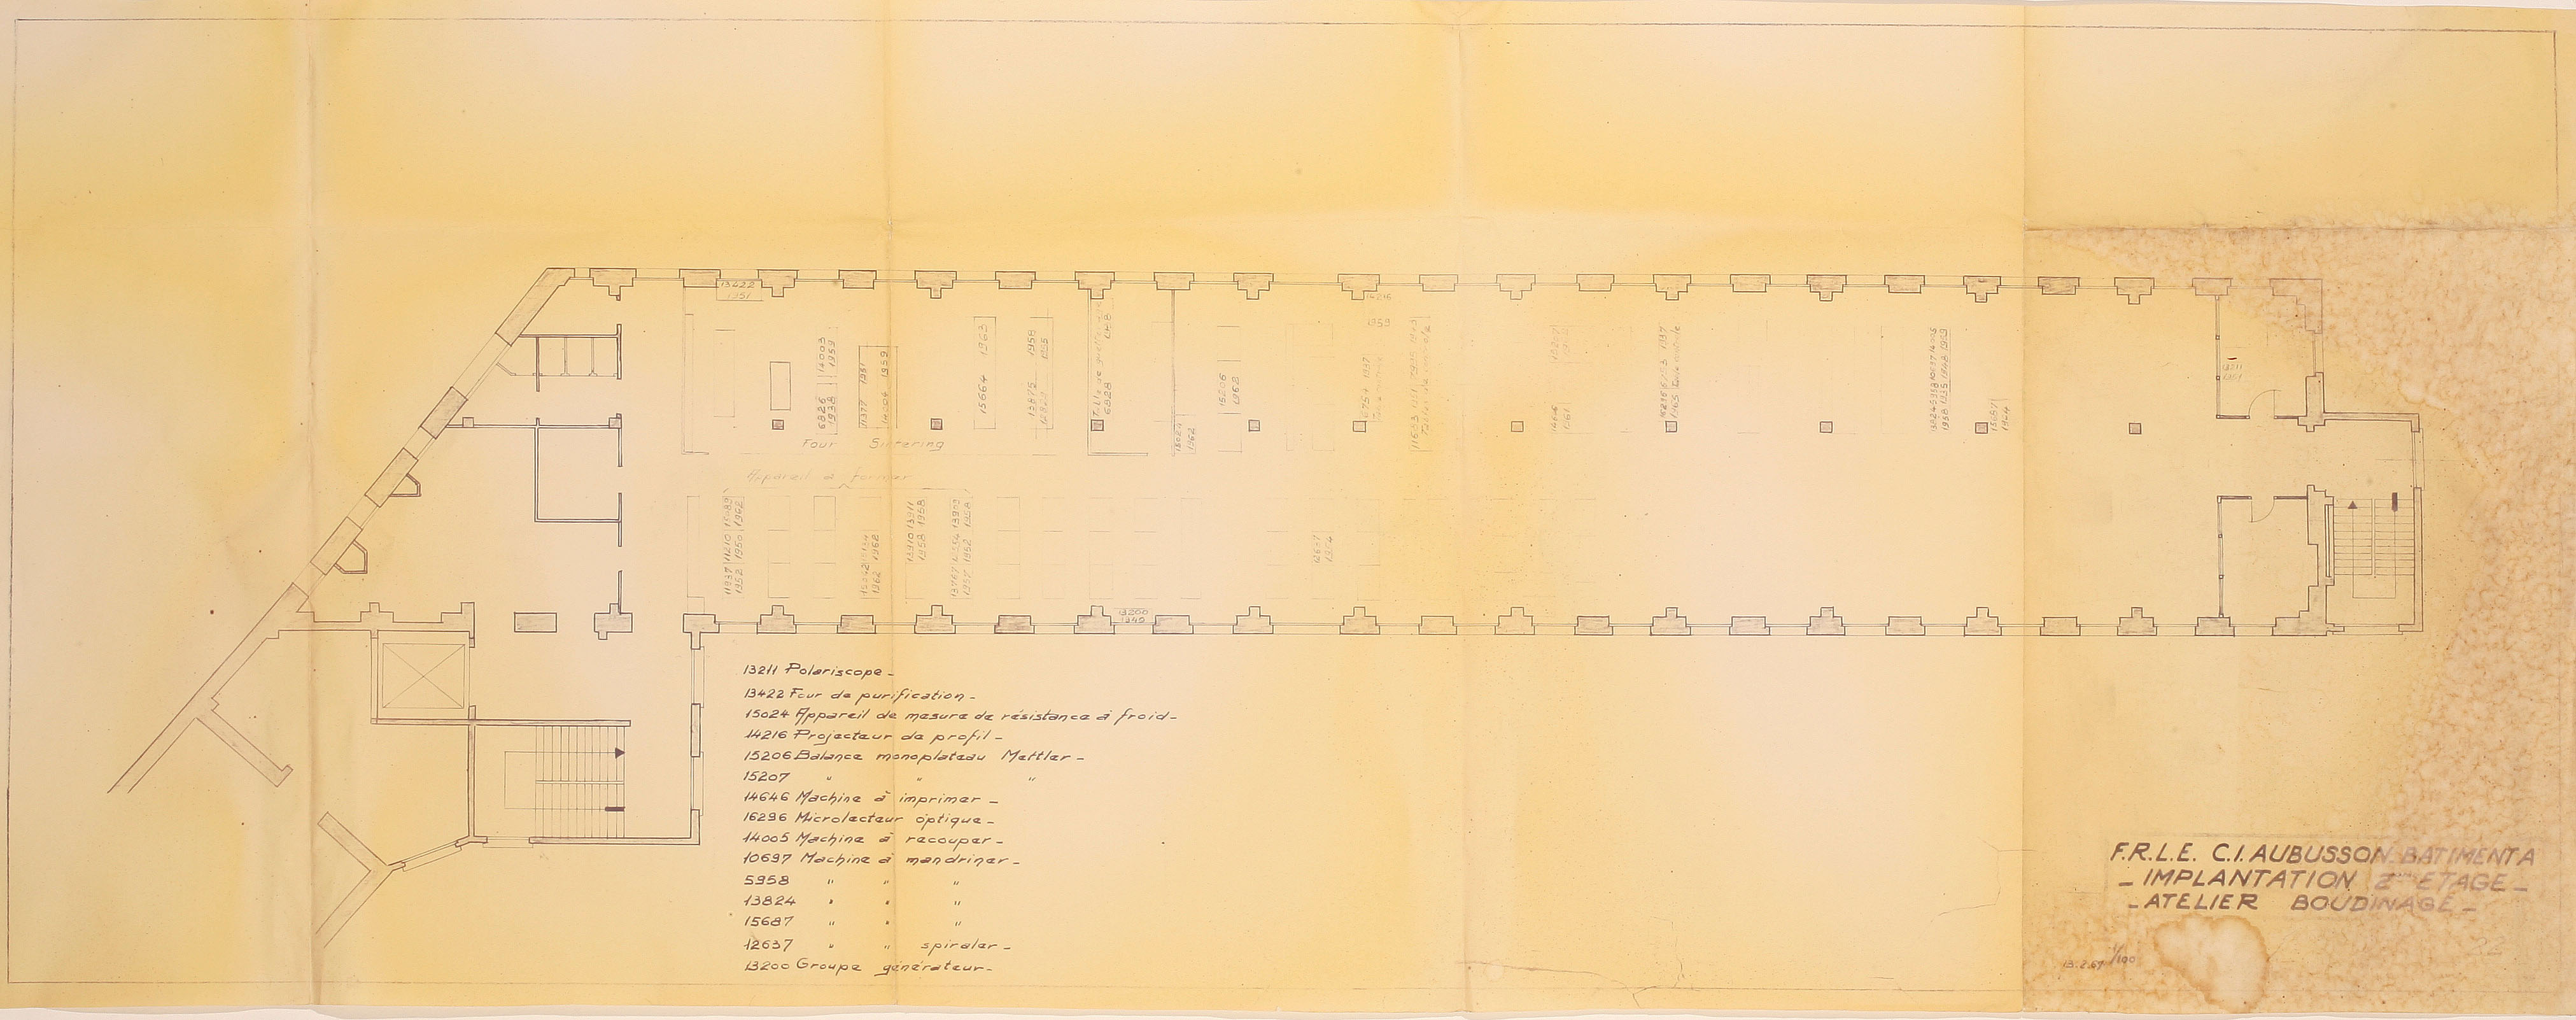 Plan du 2ème étage du bâtiment A de la FRLE (1966) (AC Aubusson).